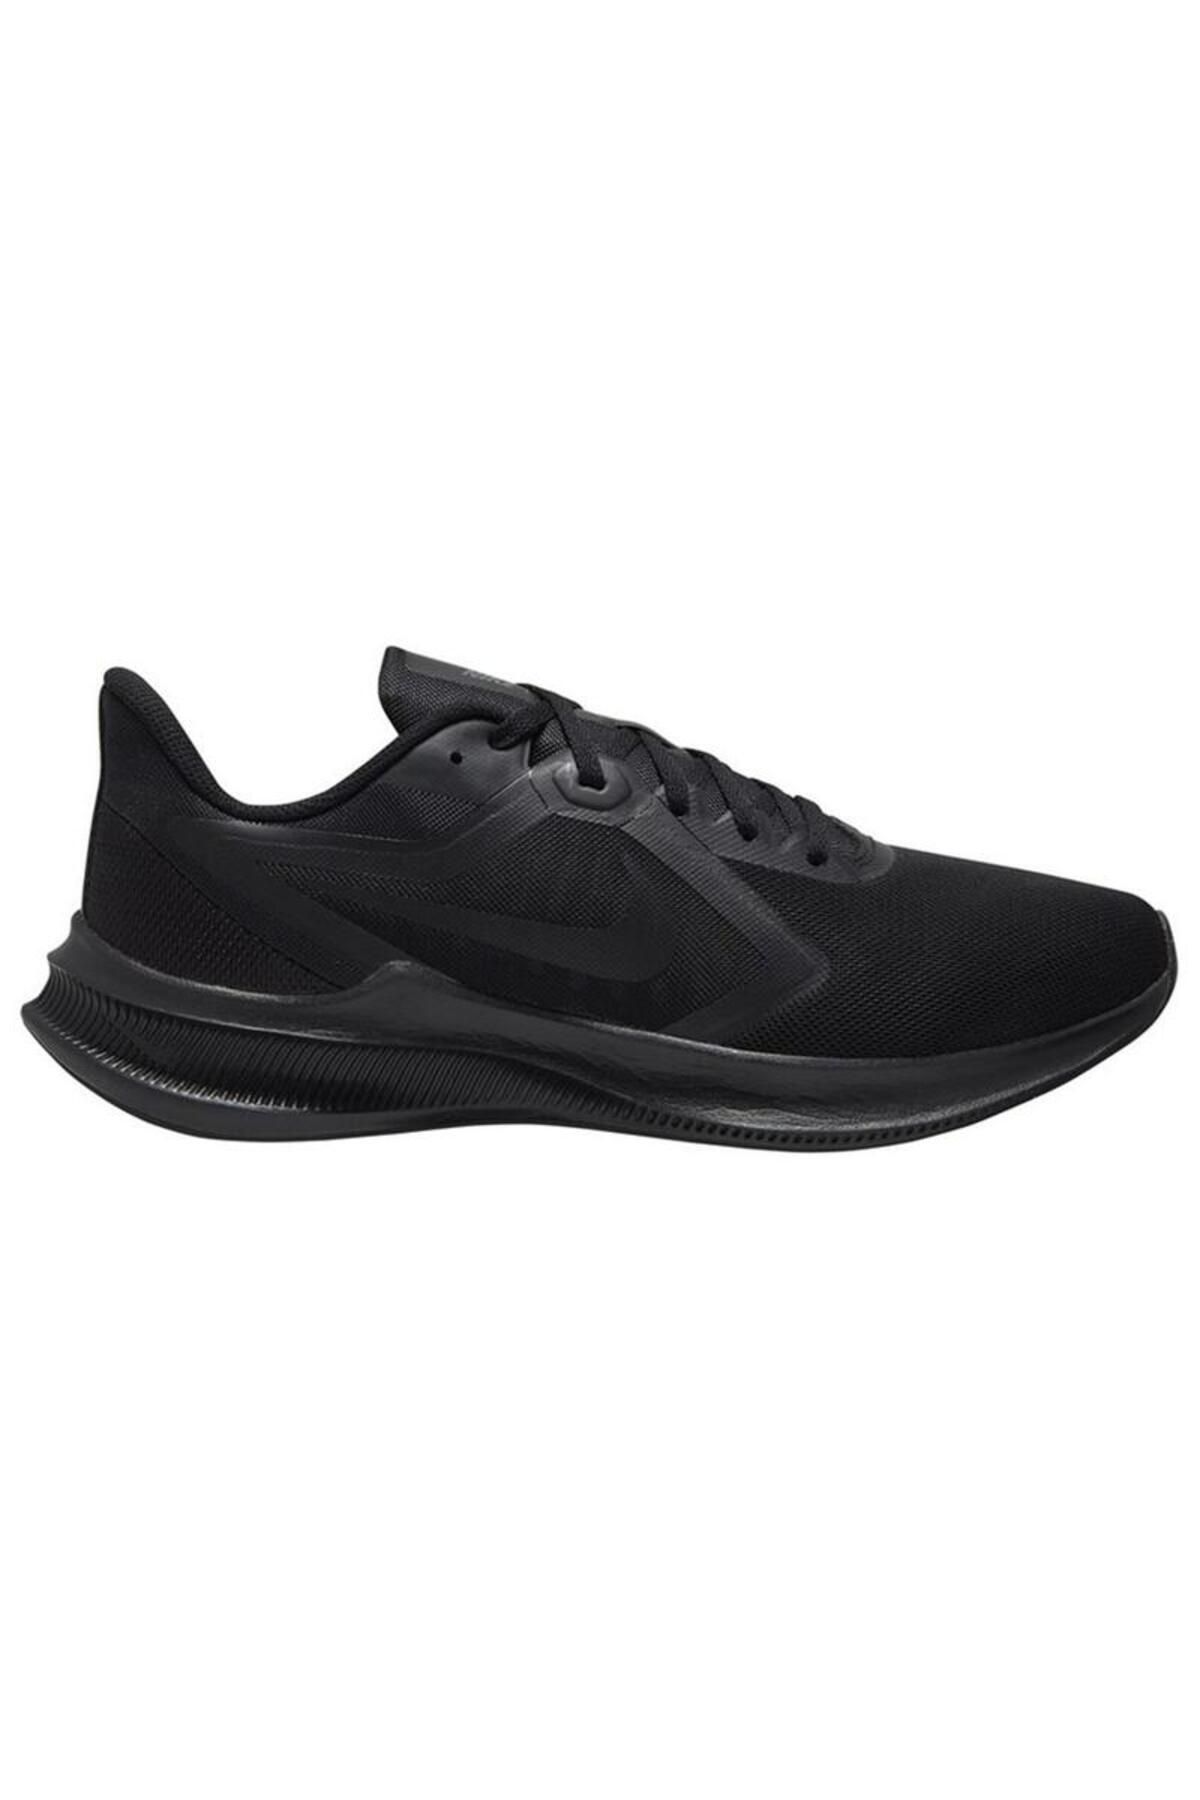 Nike Erkek Siyah Erkek Spor Ayakkabı Cı9981-002-002